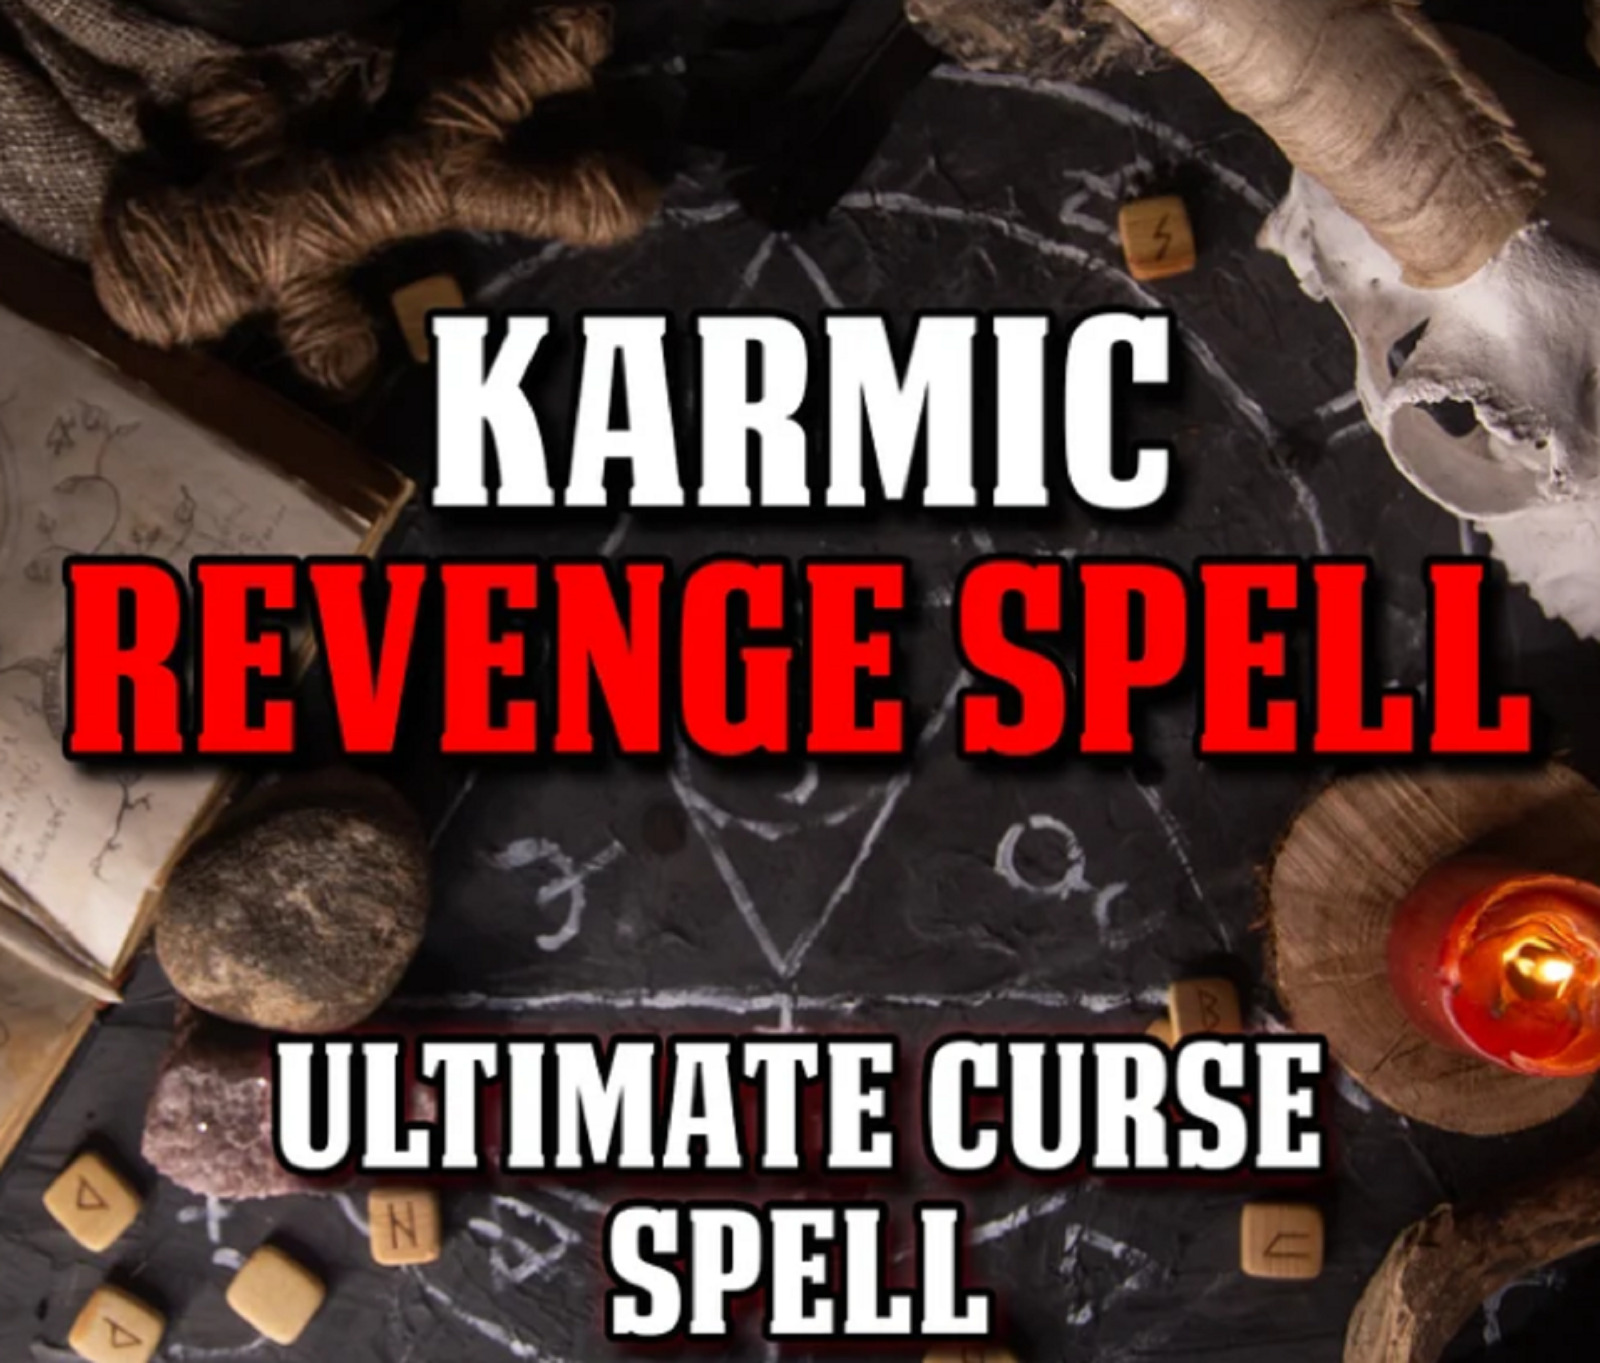 Powerful Revenge Spell, Curse Your Enemy Spell, Karmic Revenge Spell, Vengence S